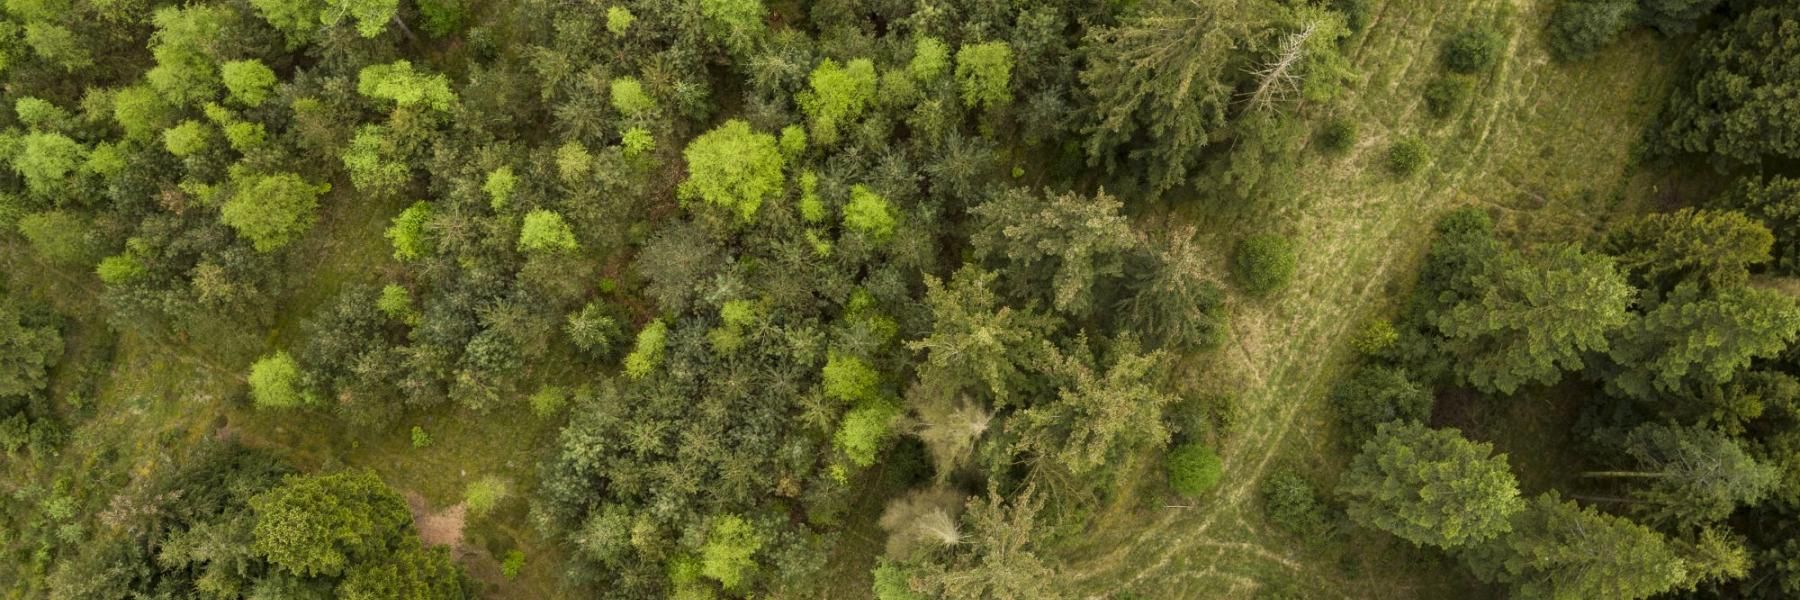 Dronefoto af skov